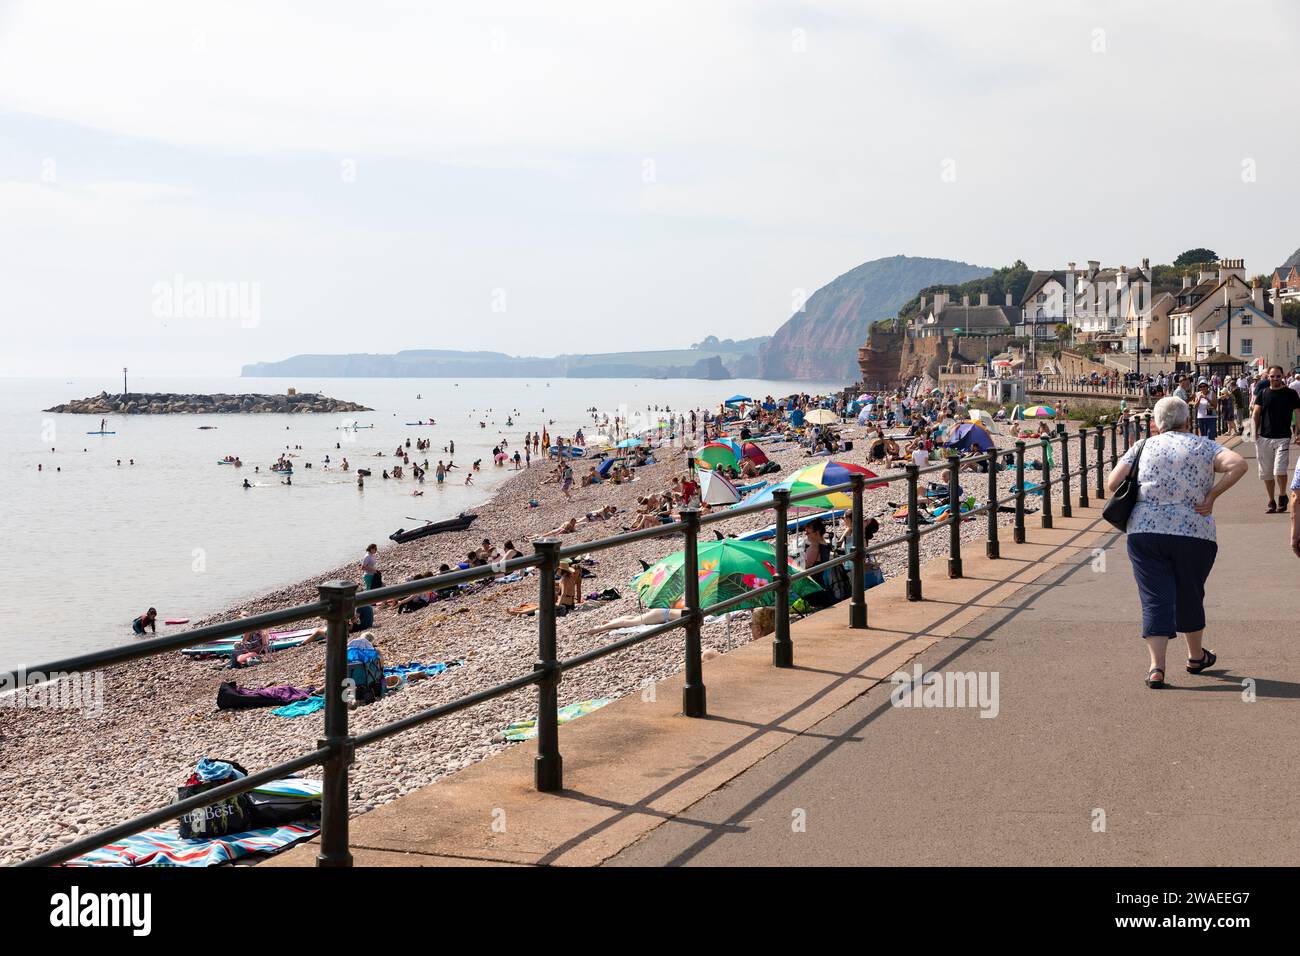 Sidmouth, ville côtière de la côte sud dans le Devon Angleterre, les gens sur l'esplanade le jour chaud de septembre, Angleterre, Royaume-Uni, 2023 Banque D'Images